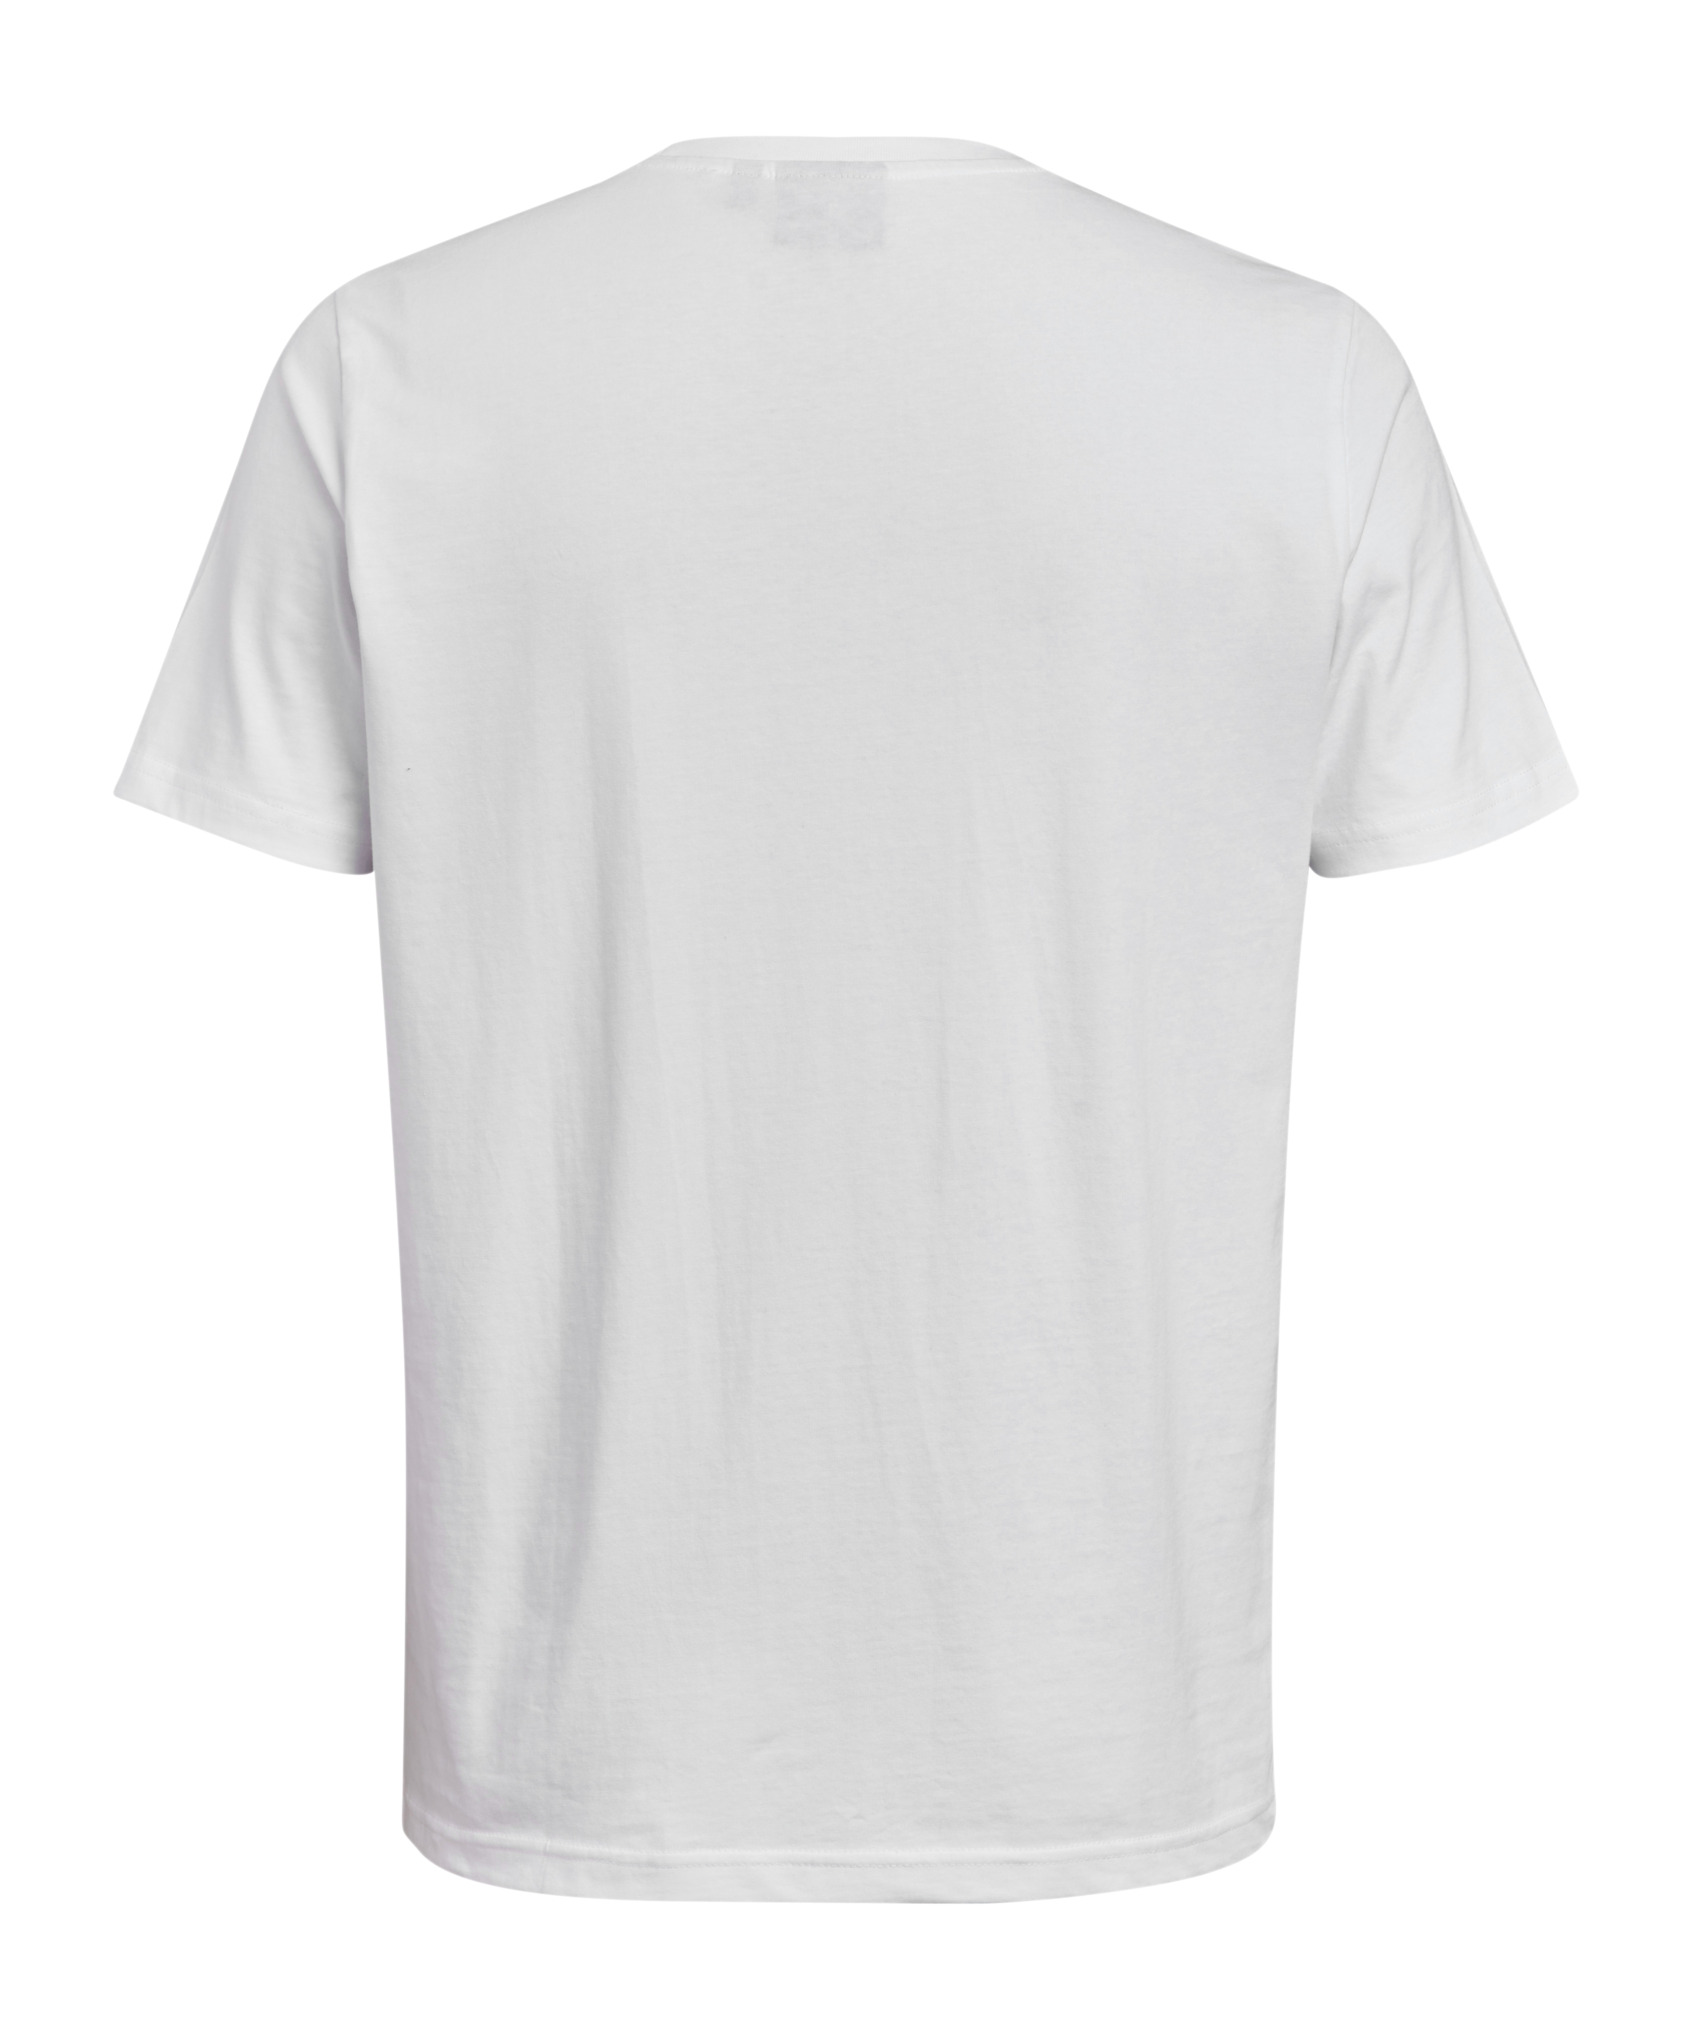 T-shirt WHITE LOGO Homme